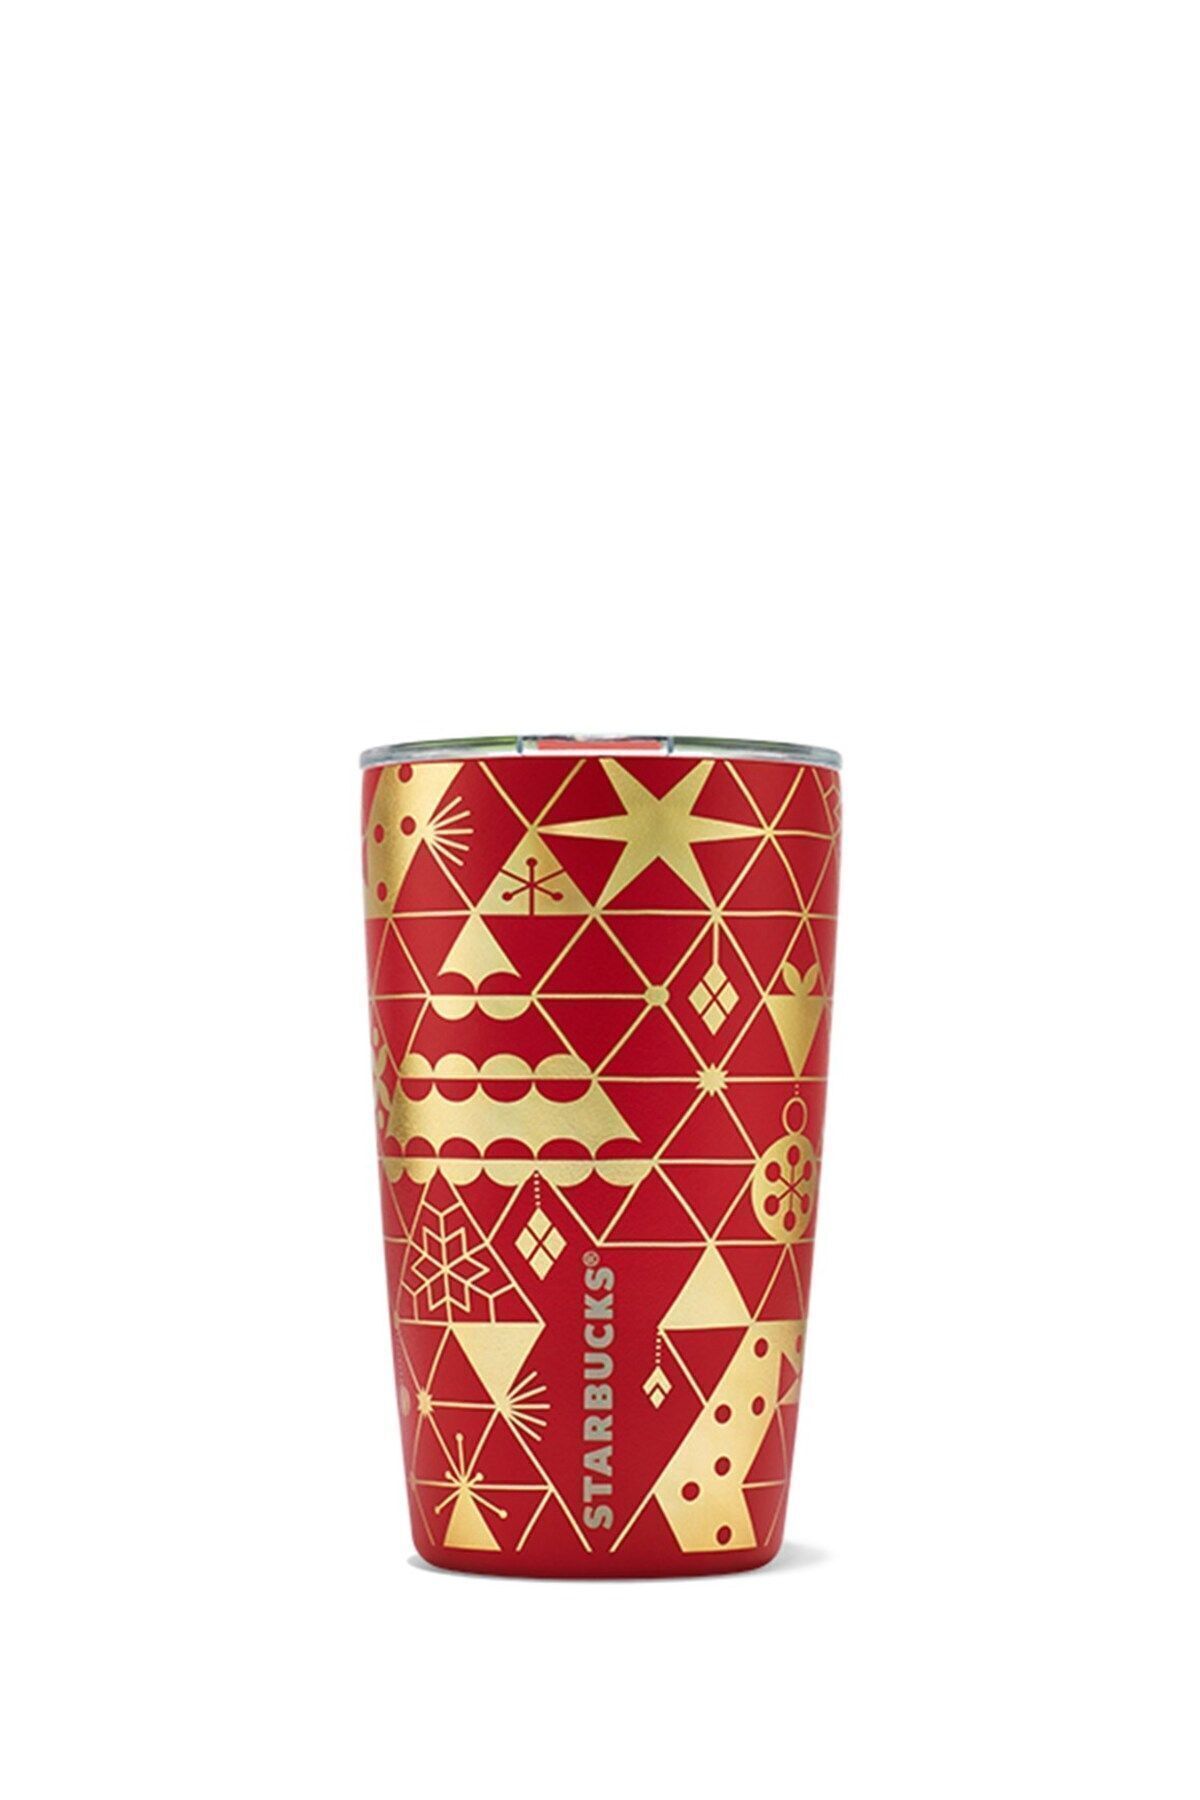 Starbucks Kırmızı Yıldız Desenli Mirr Tasarımlı Paslanmaz Çelik Termos Bardak 355 Ml